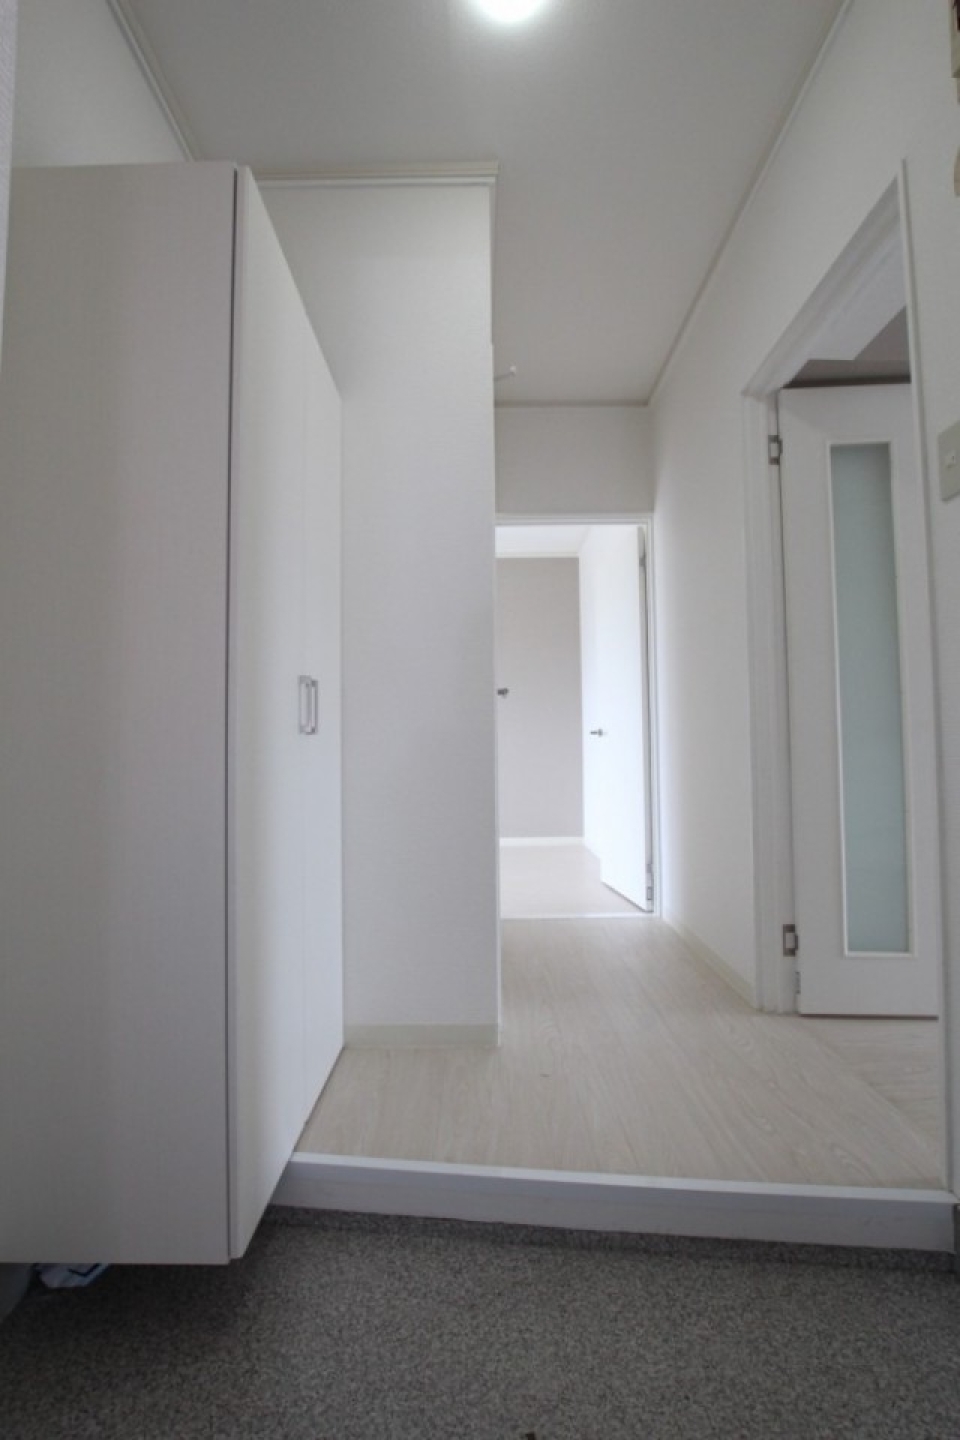 白い室内空間のスタートは玄関扉を開けた瞬間から。